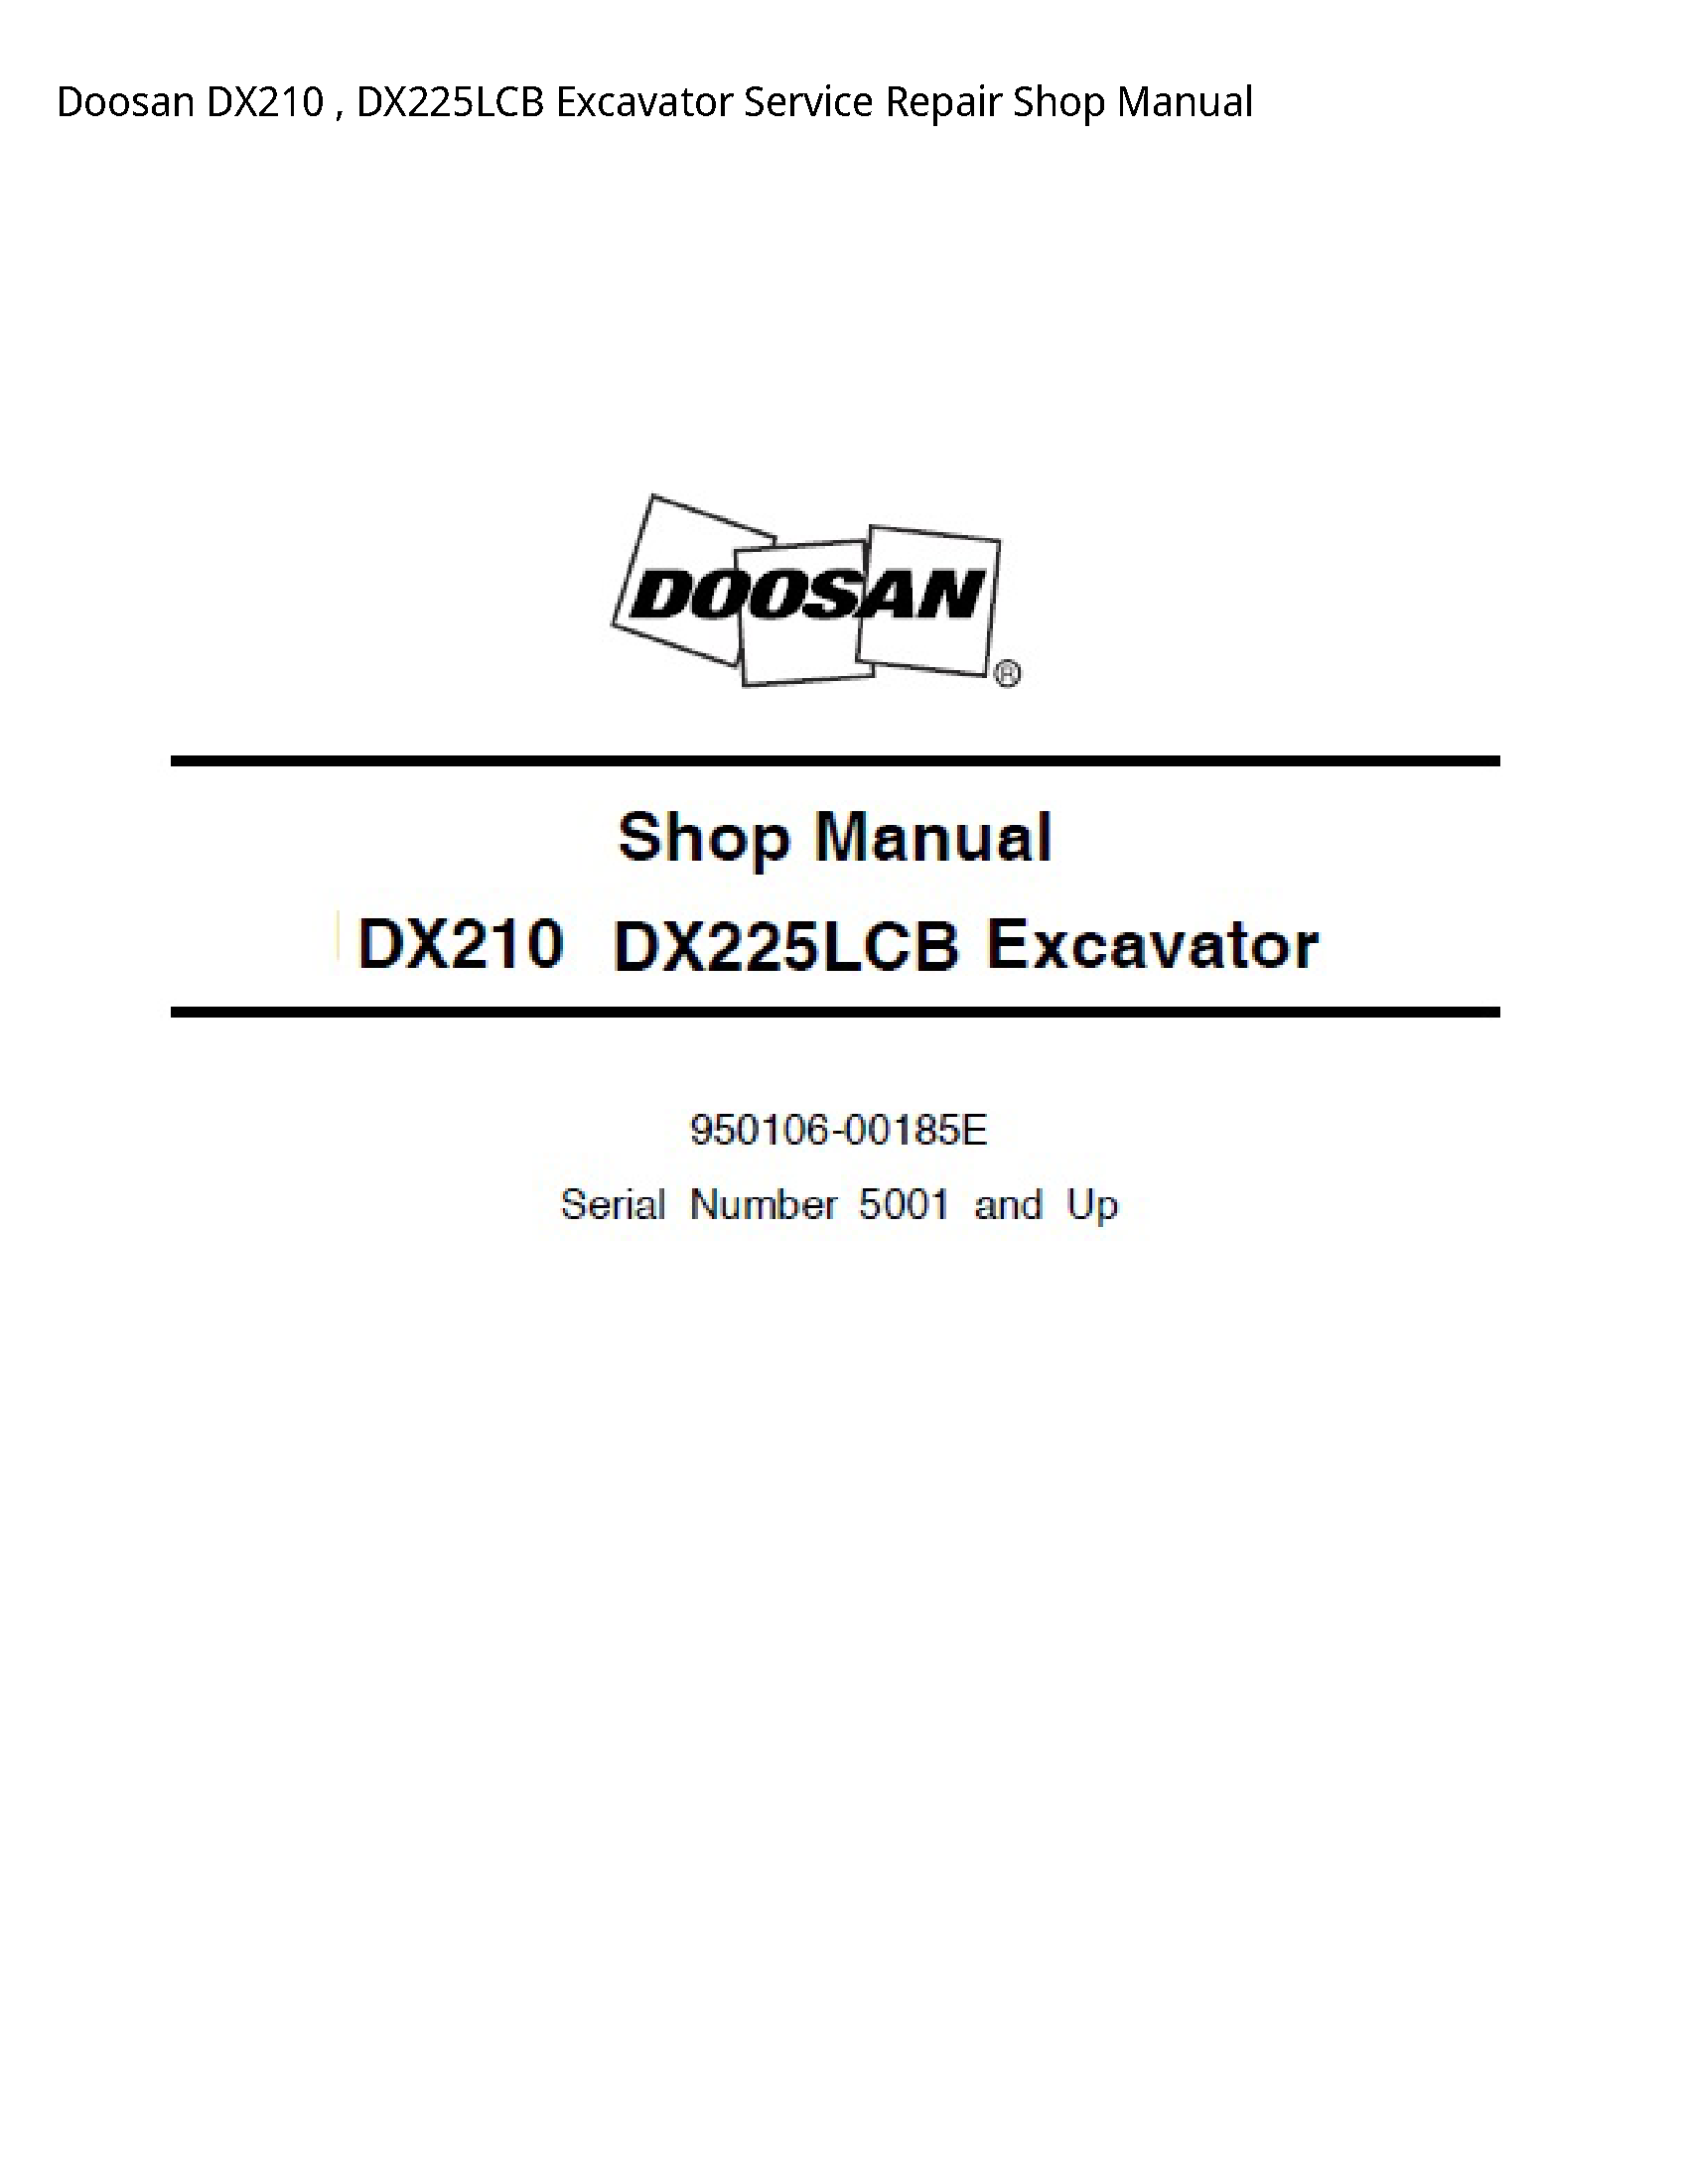 Doosan DX210 Excavator manual